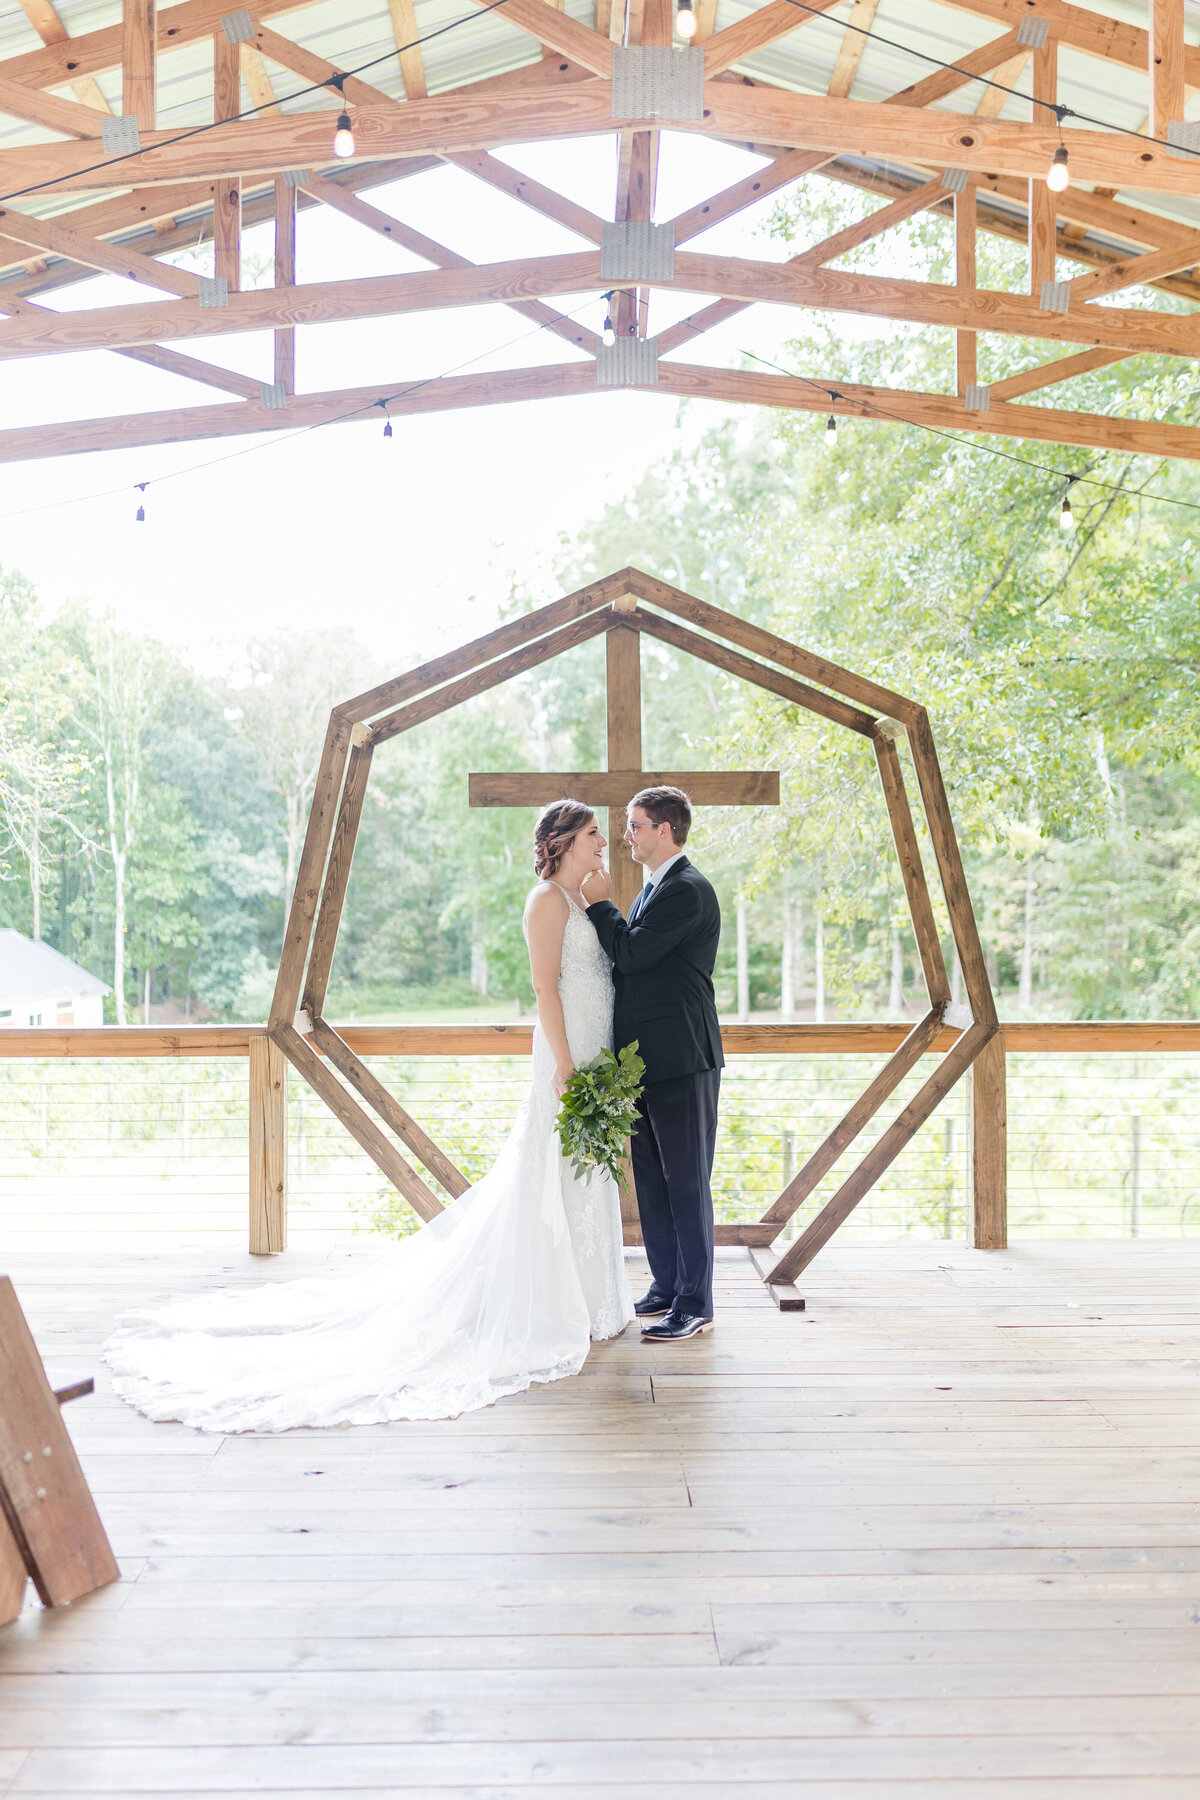 outdoor wedding ceremony at Koury Farms wedding venue in North Georgia